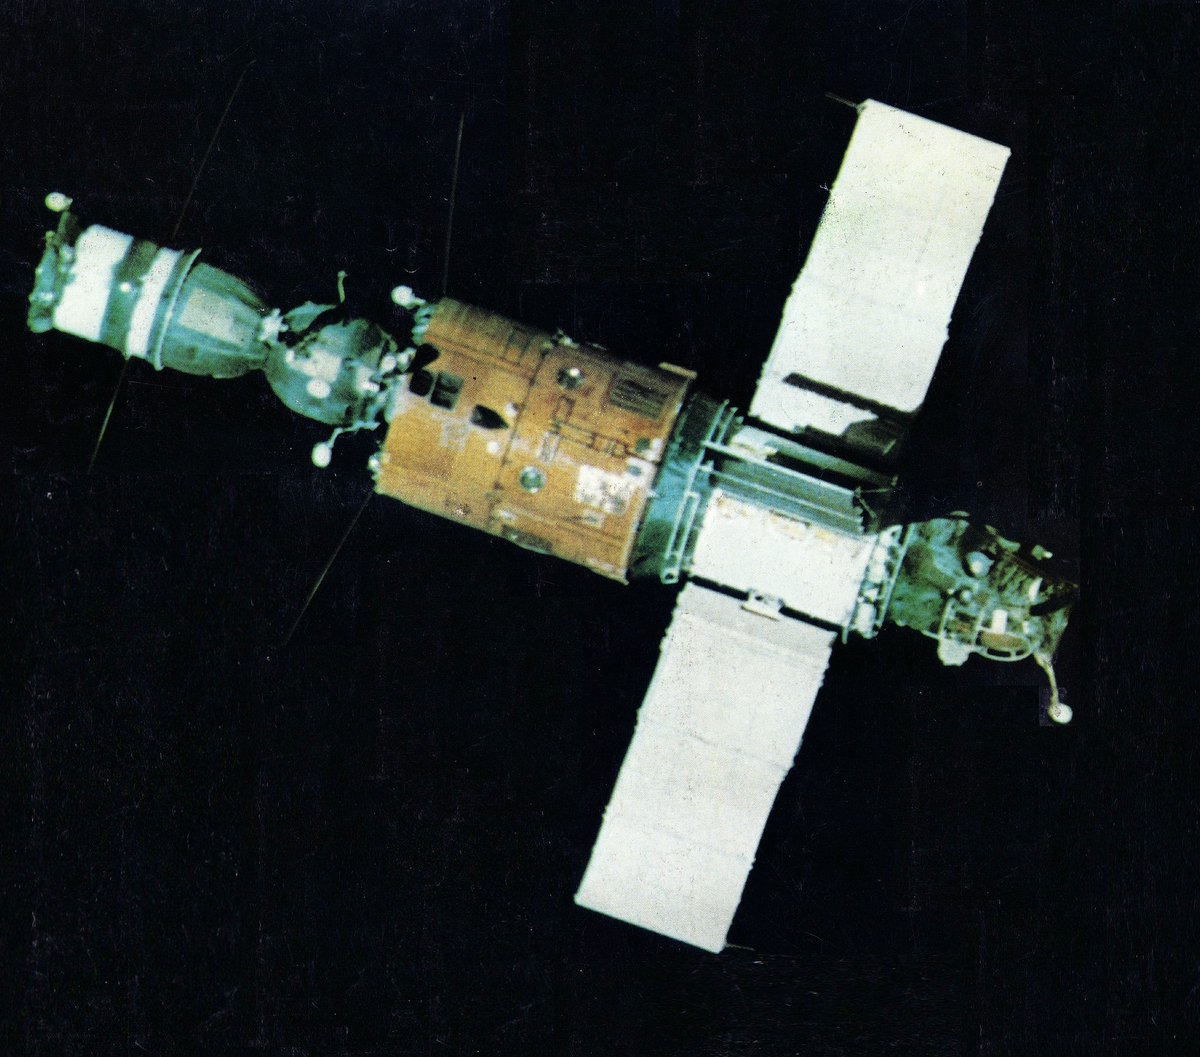 Et cela tombe bien, car cela ne fonctionnera pas que pour les satellites, mais aussi pour les astronautes © URSS / Spacefacts.de